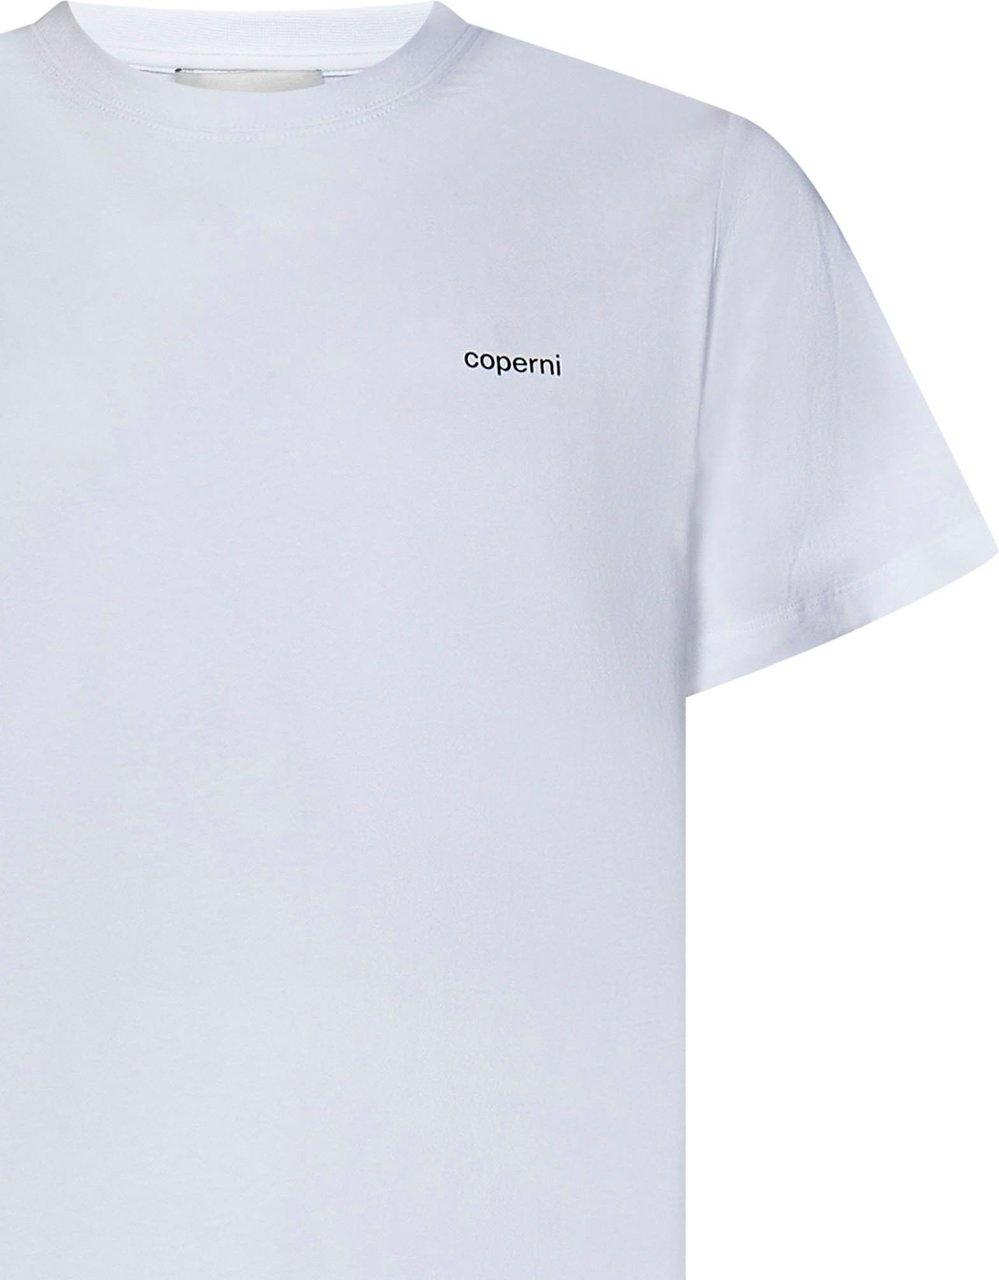 Coperni Coperni T-shirts and Polos White Wit